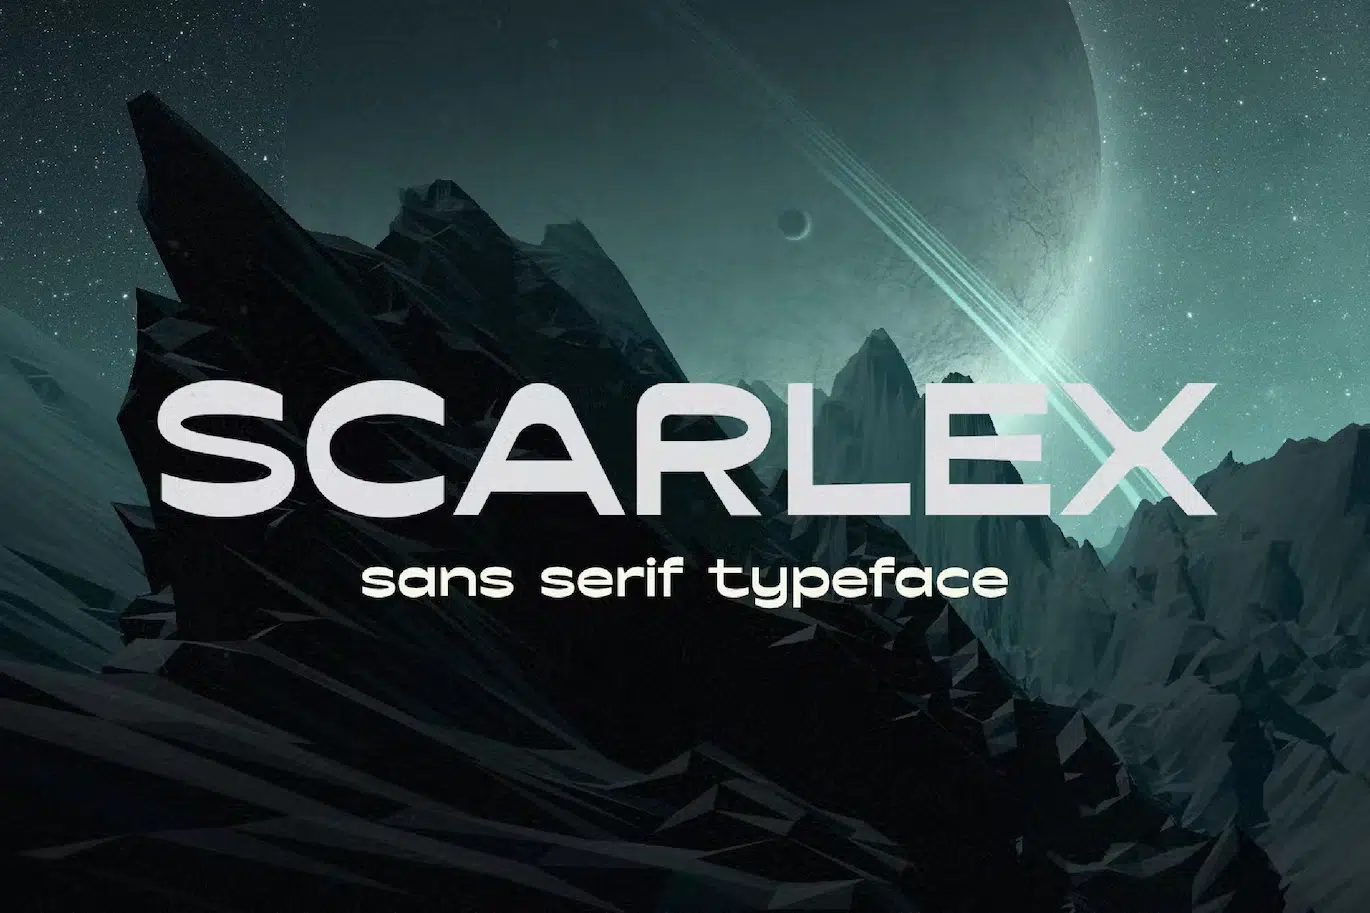 Scarlex - Retro Space Typeface